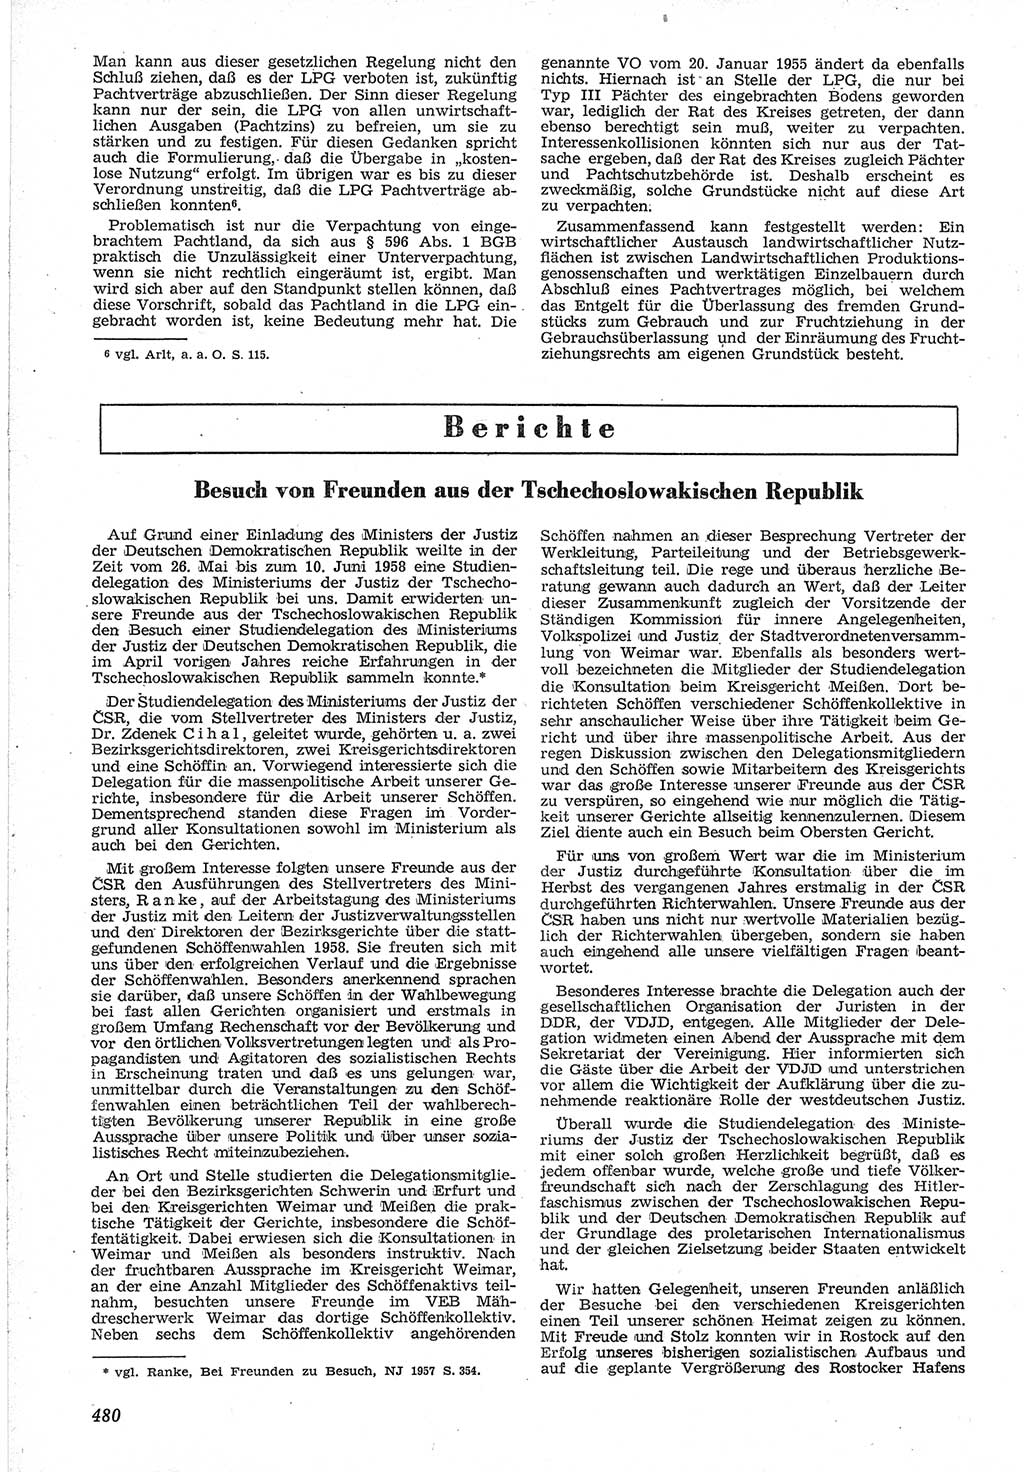 Neue Justiz (NJ), Zeitschrift für Recht und Rechtswissenschaft [Deutsche Demokratische Republik (DDR)], 12. Jahrgang 1958, Seite 480 (NJ DDR 1958, S. 480)